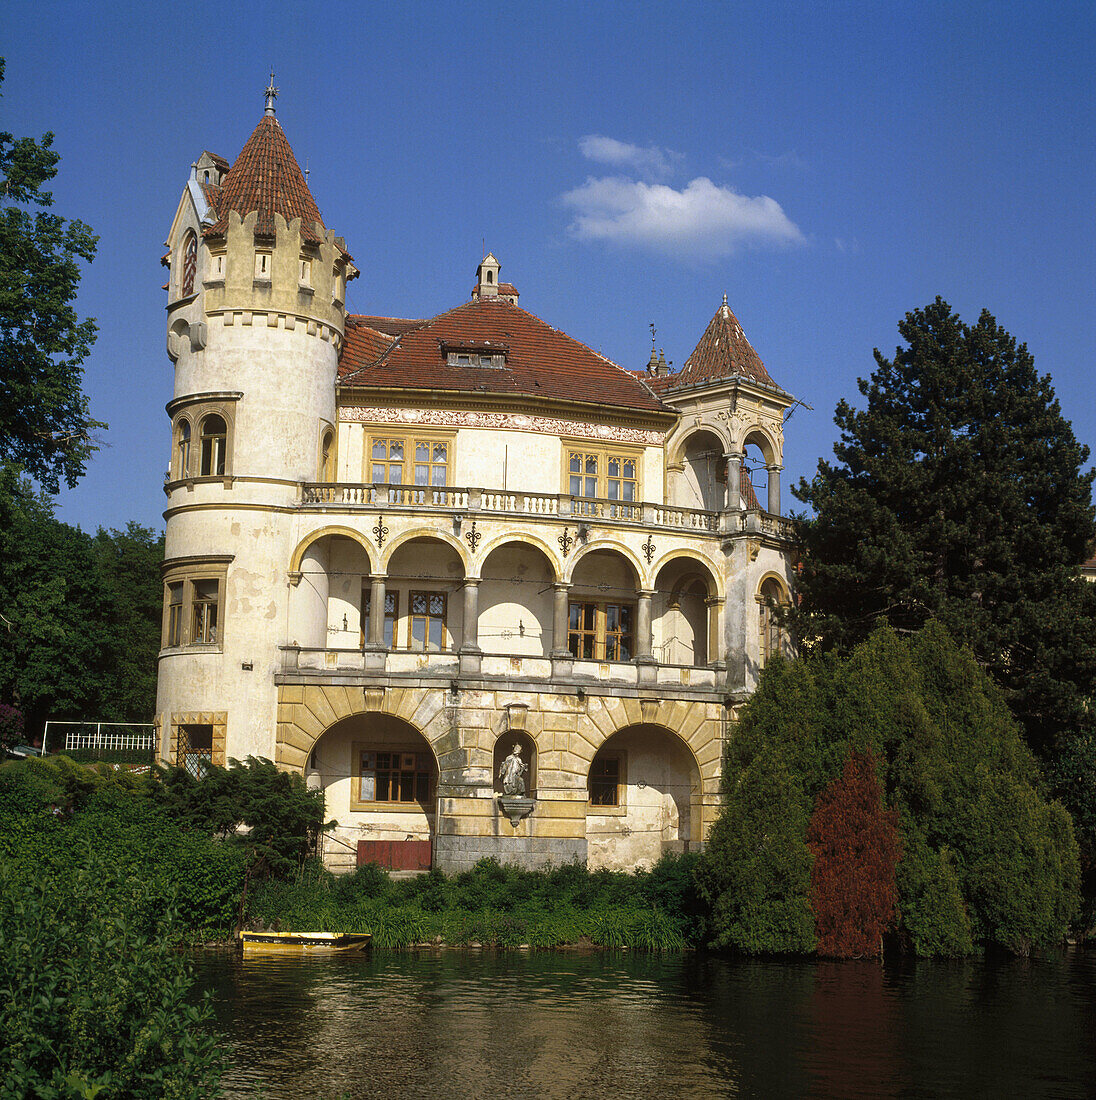 Zinkovy Water Castle. Czech Republic